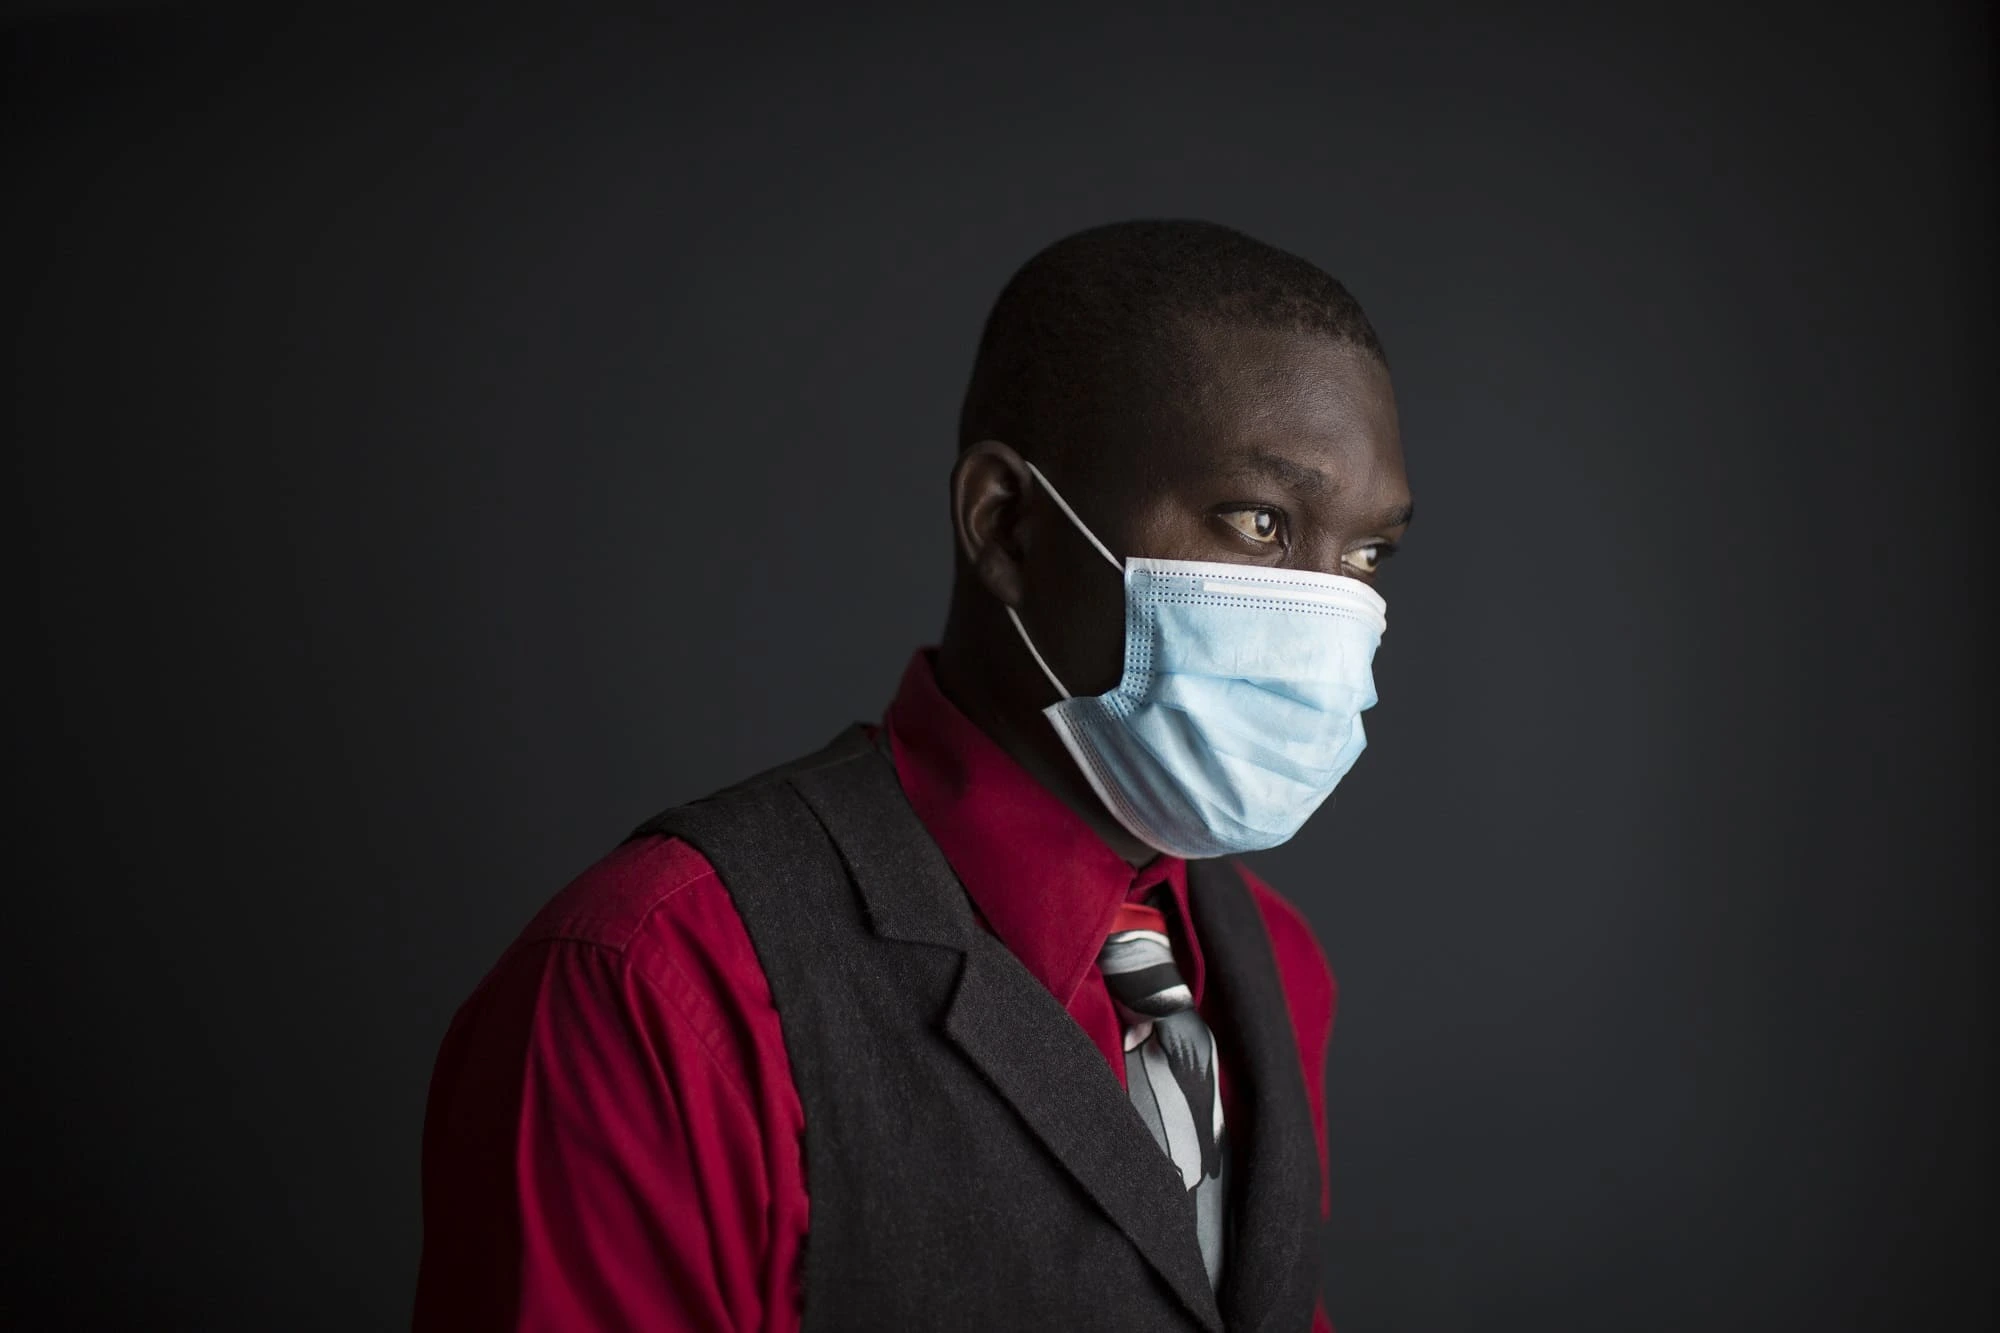 República Dominicana: Retrato de una pandemia​. Ana Valiño